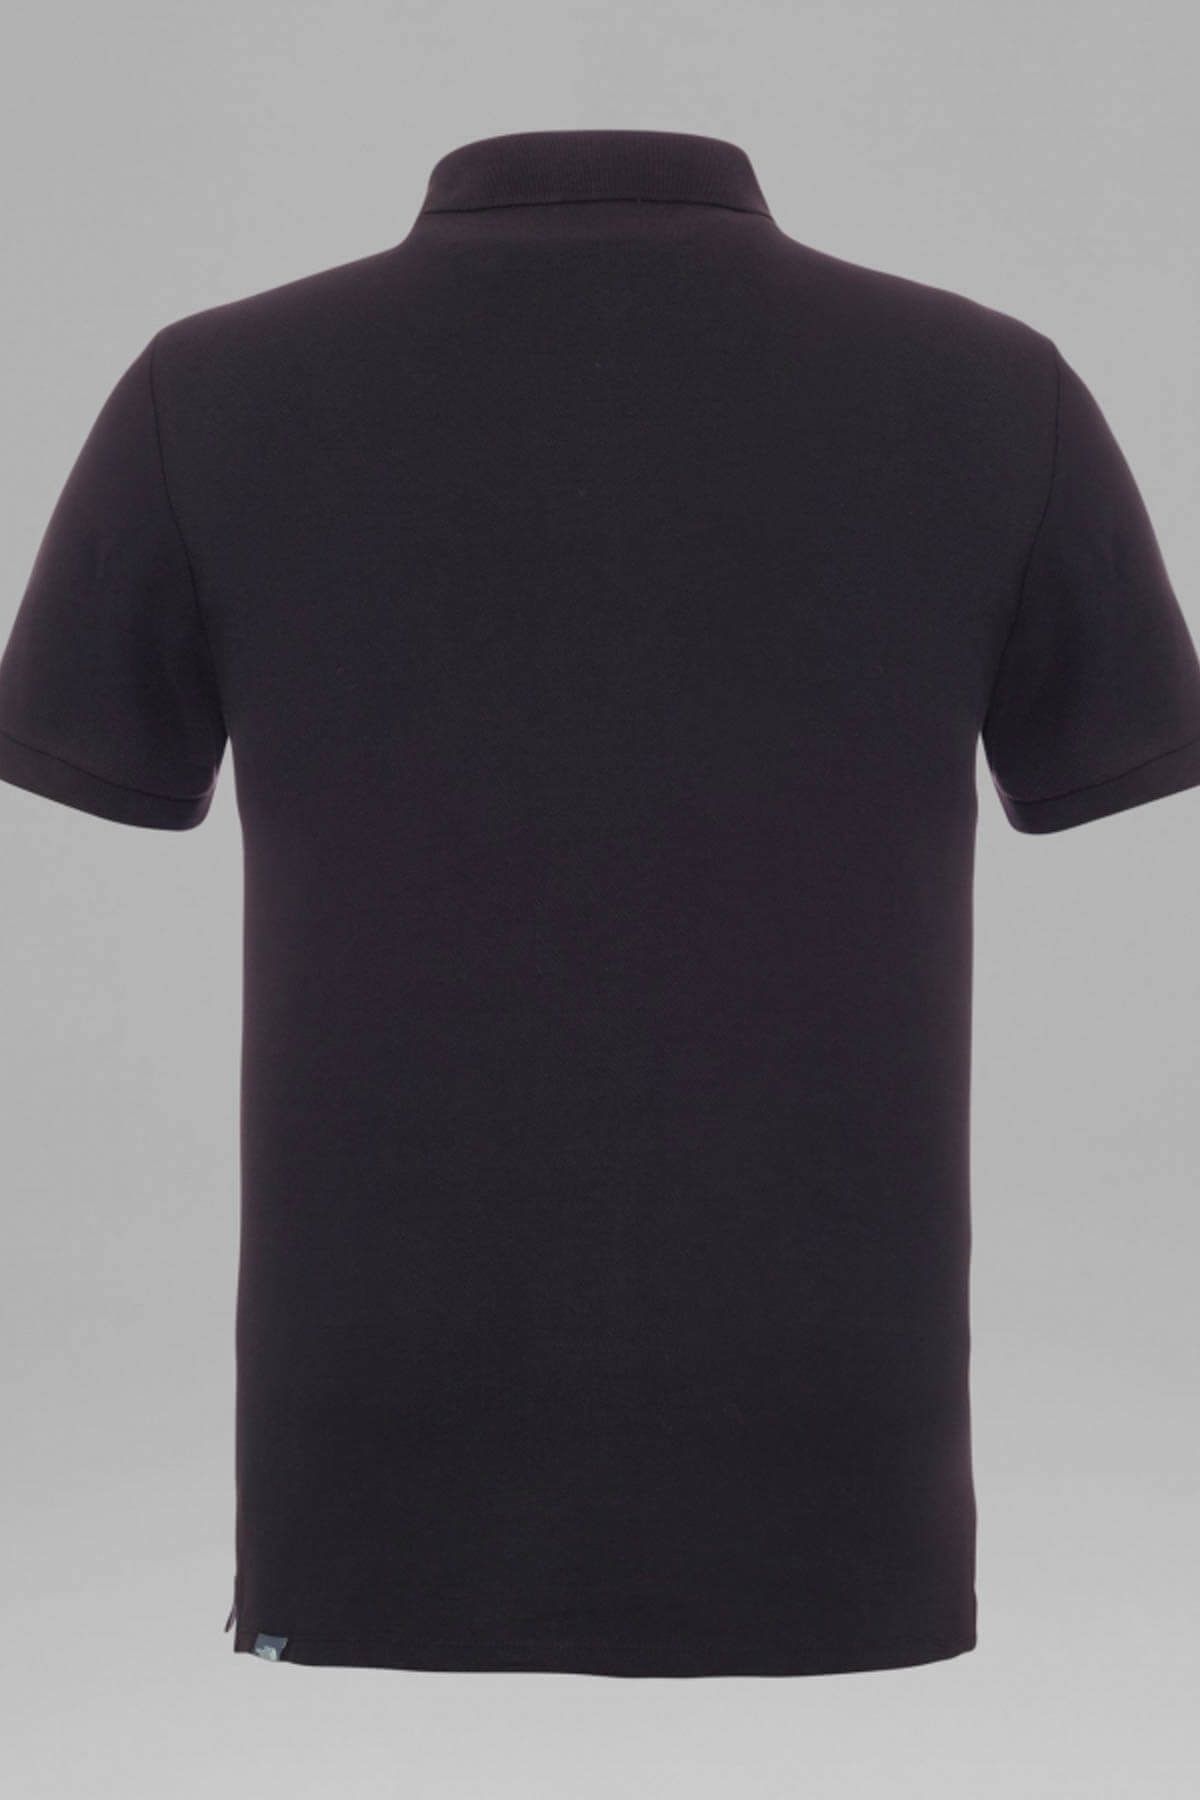 The North Face تی شرت مردانه - یقه پولو مشکی ممتاز THET0CEV4E50KX7